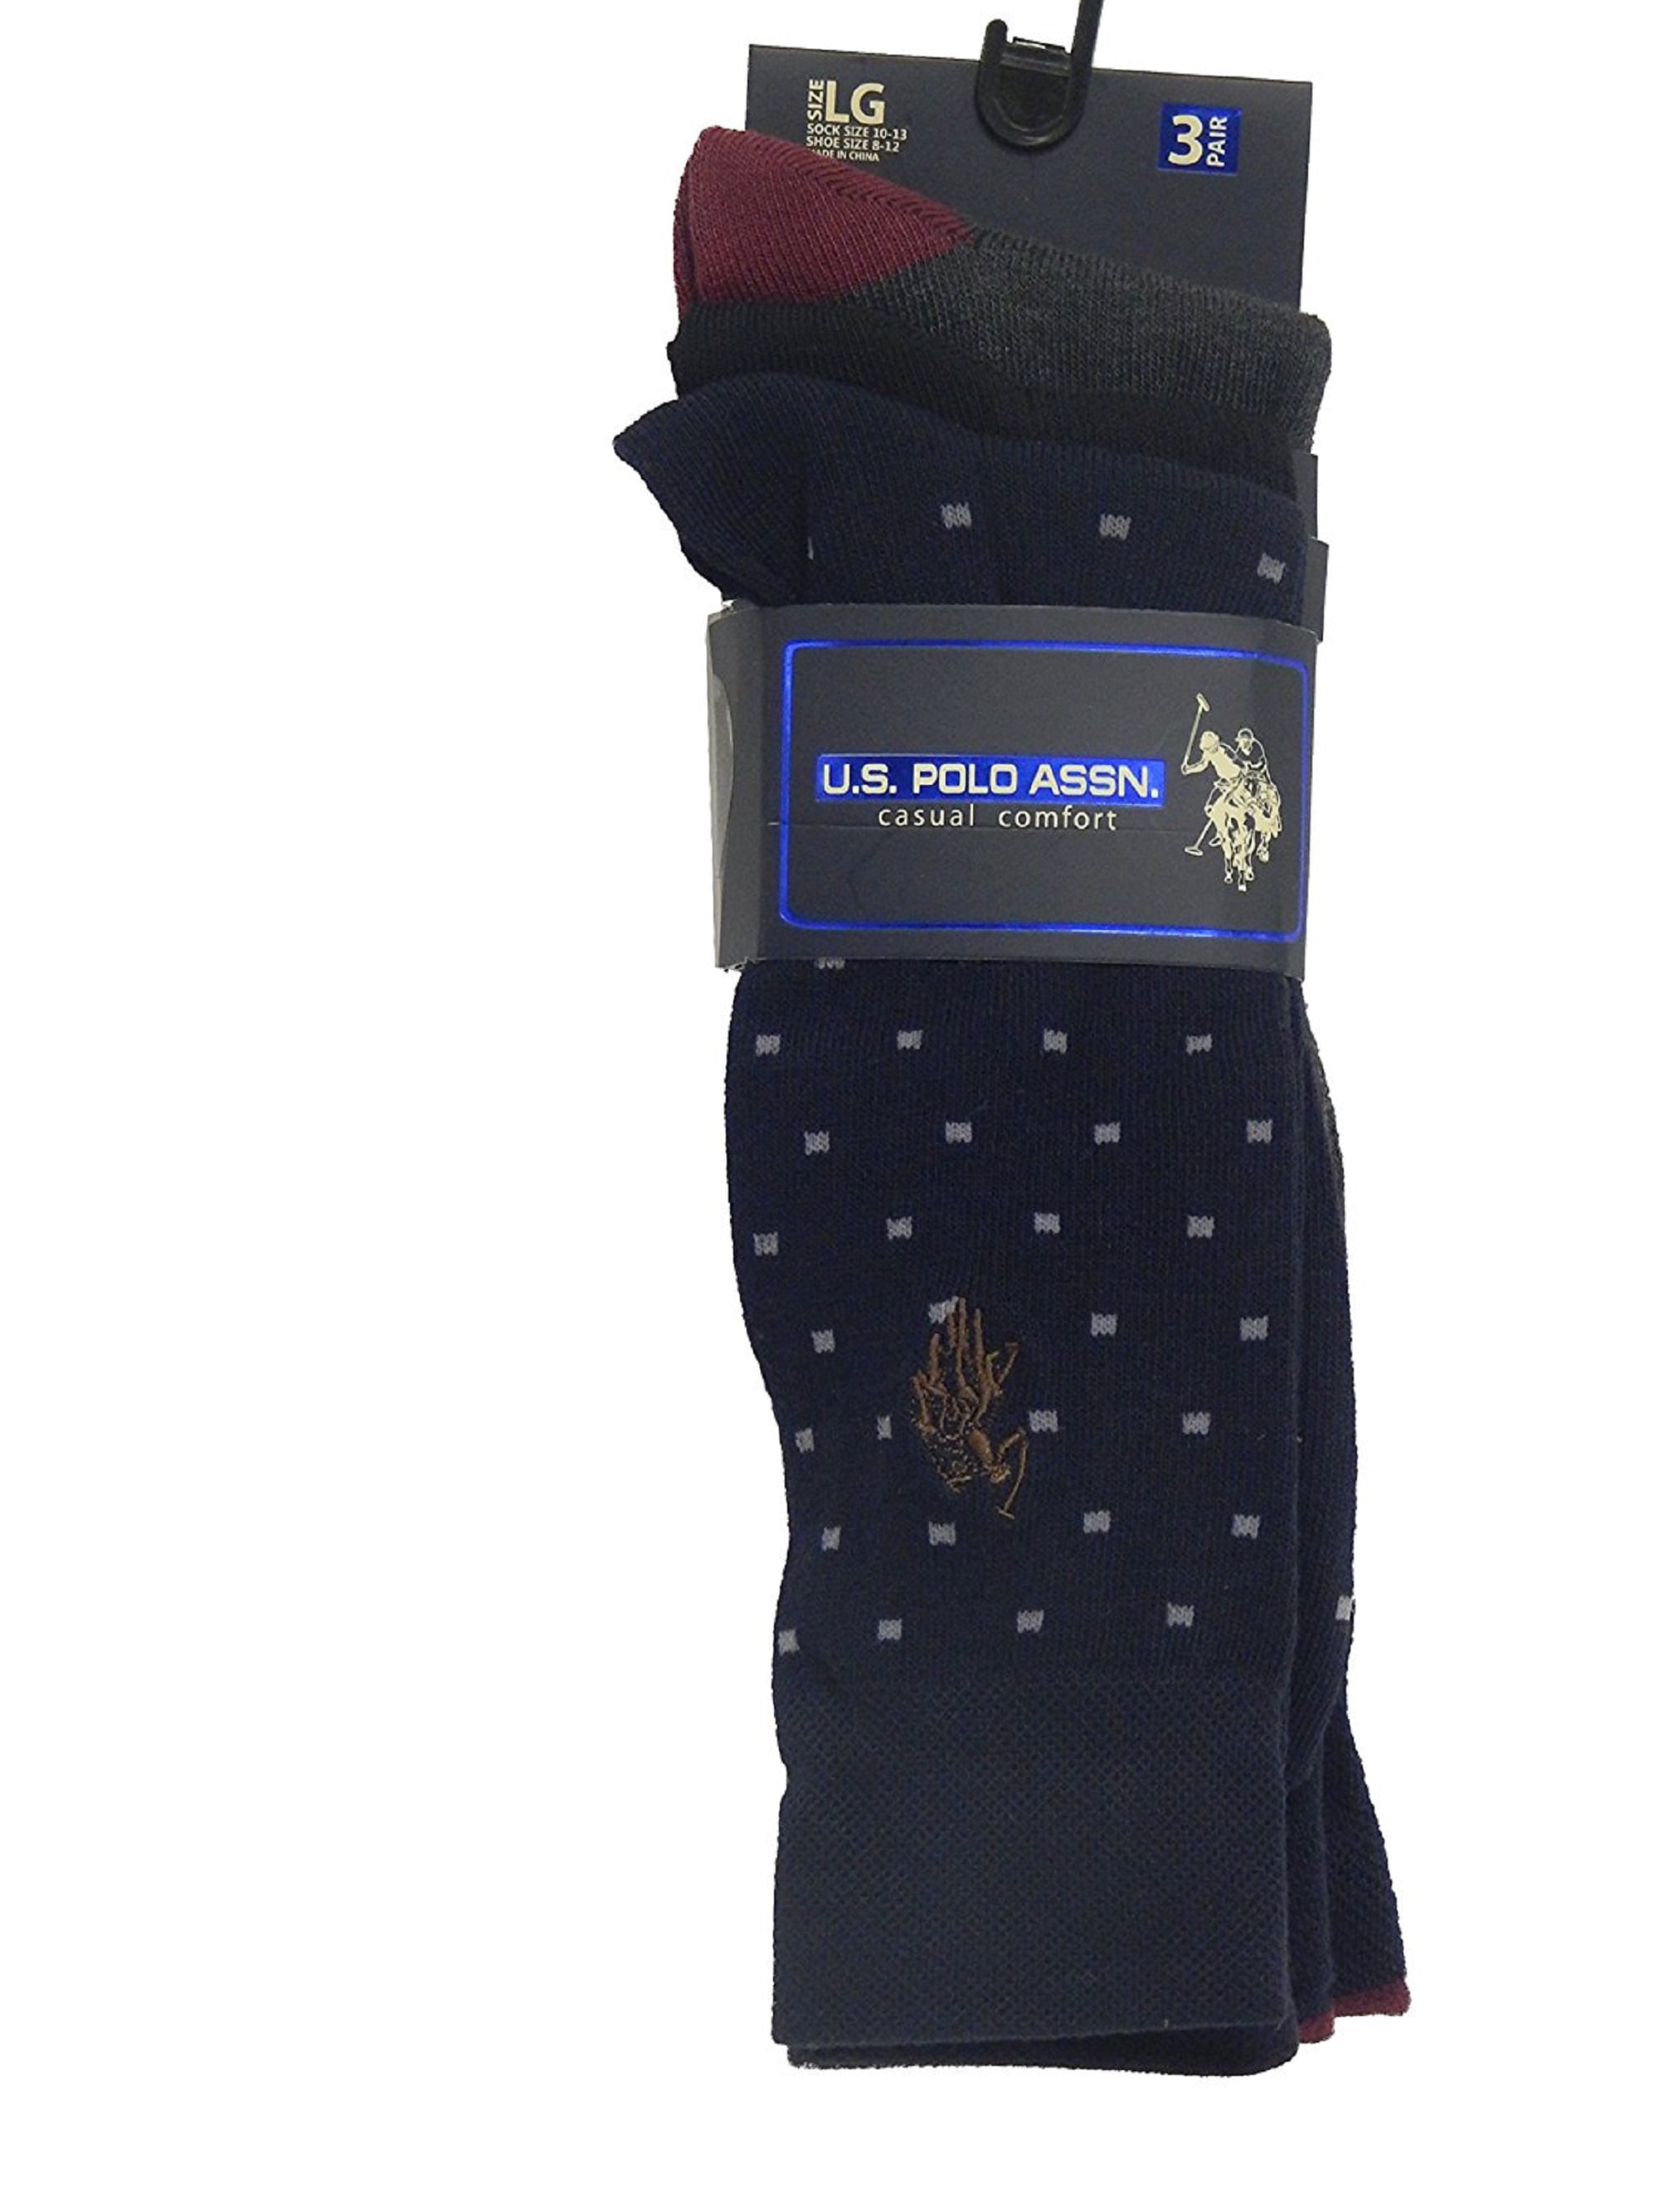 US Polo Assn. - U.S. Polo Assn. Men's Casual Comfort Flat Knit Dress ...